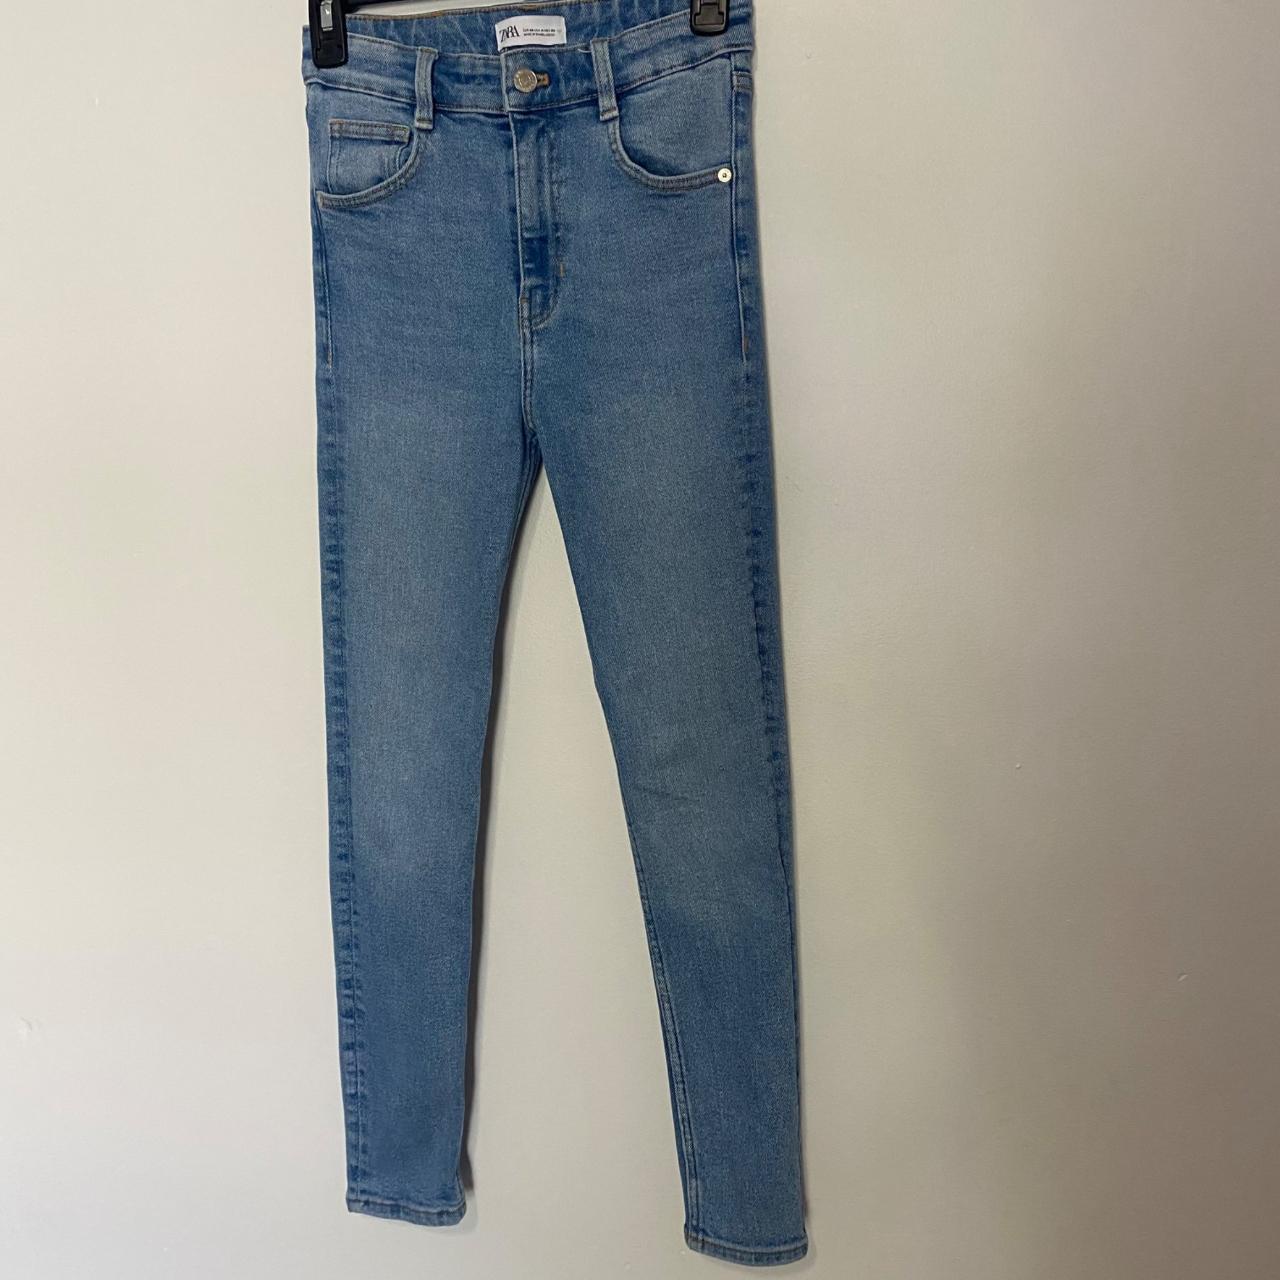 Zara women skinny blue jeans high rise size 4... - Depop